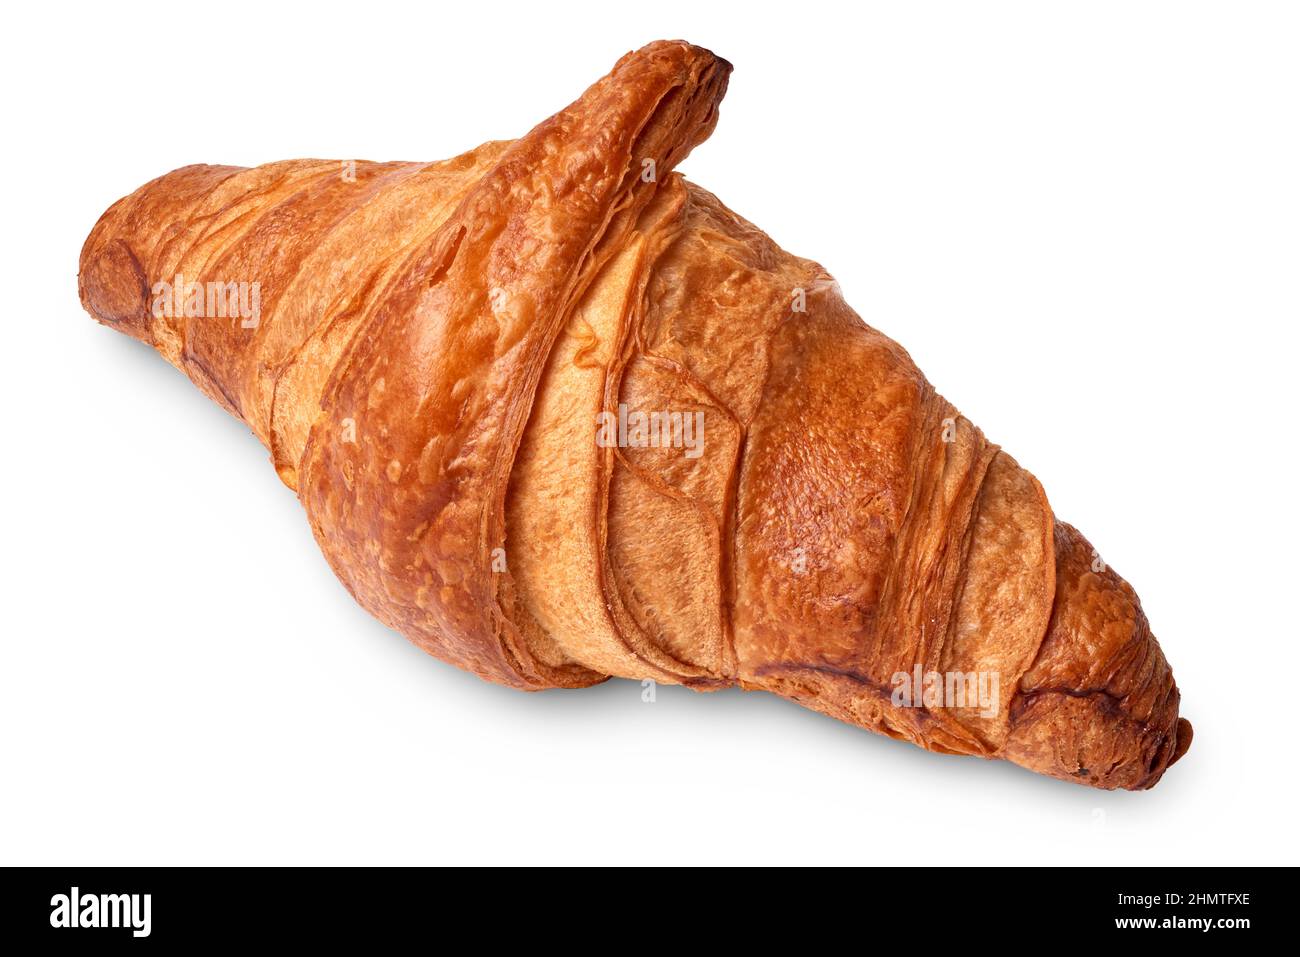 Objetos aislados: Croissant tradicional, panadería francesa de hojaldre, sobre fondo blanco Foto de stock